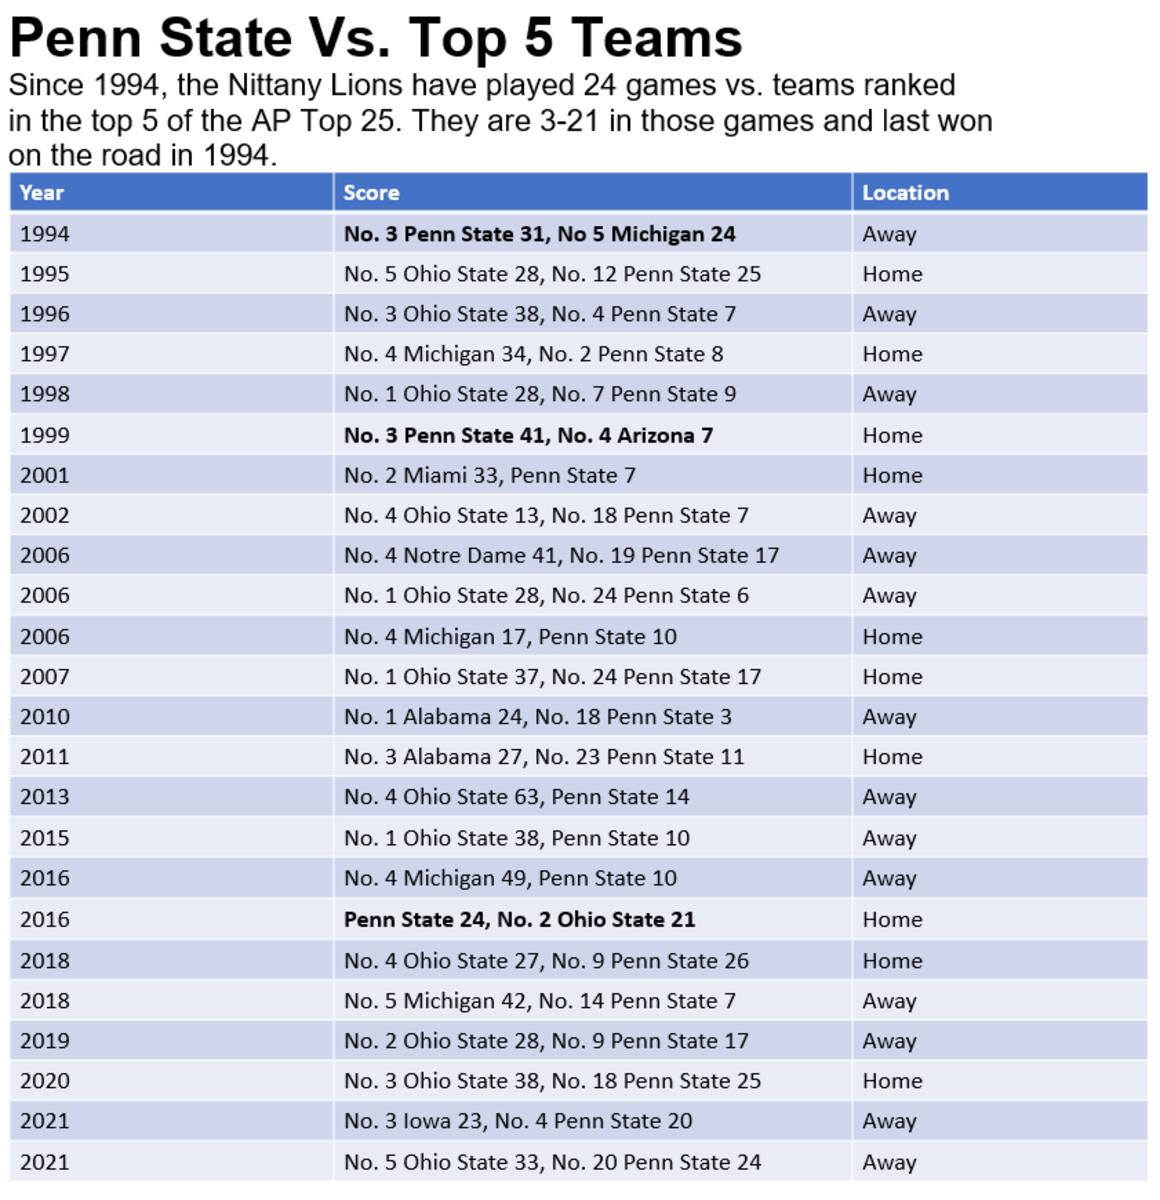 Penn State vs. Top 5 Teams